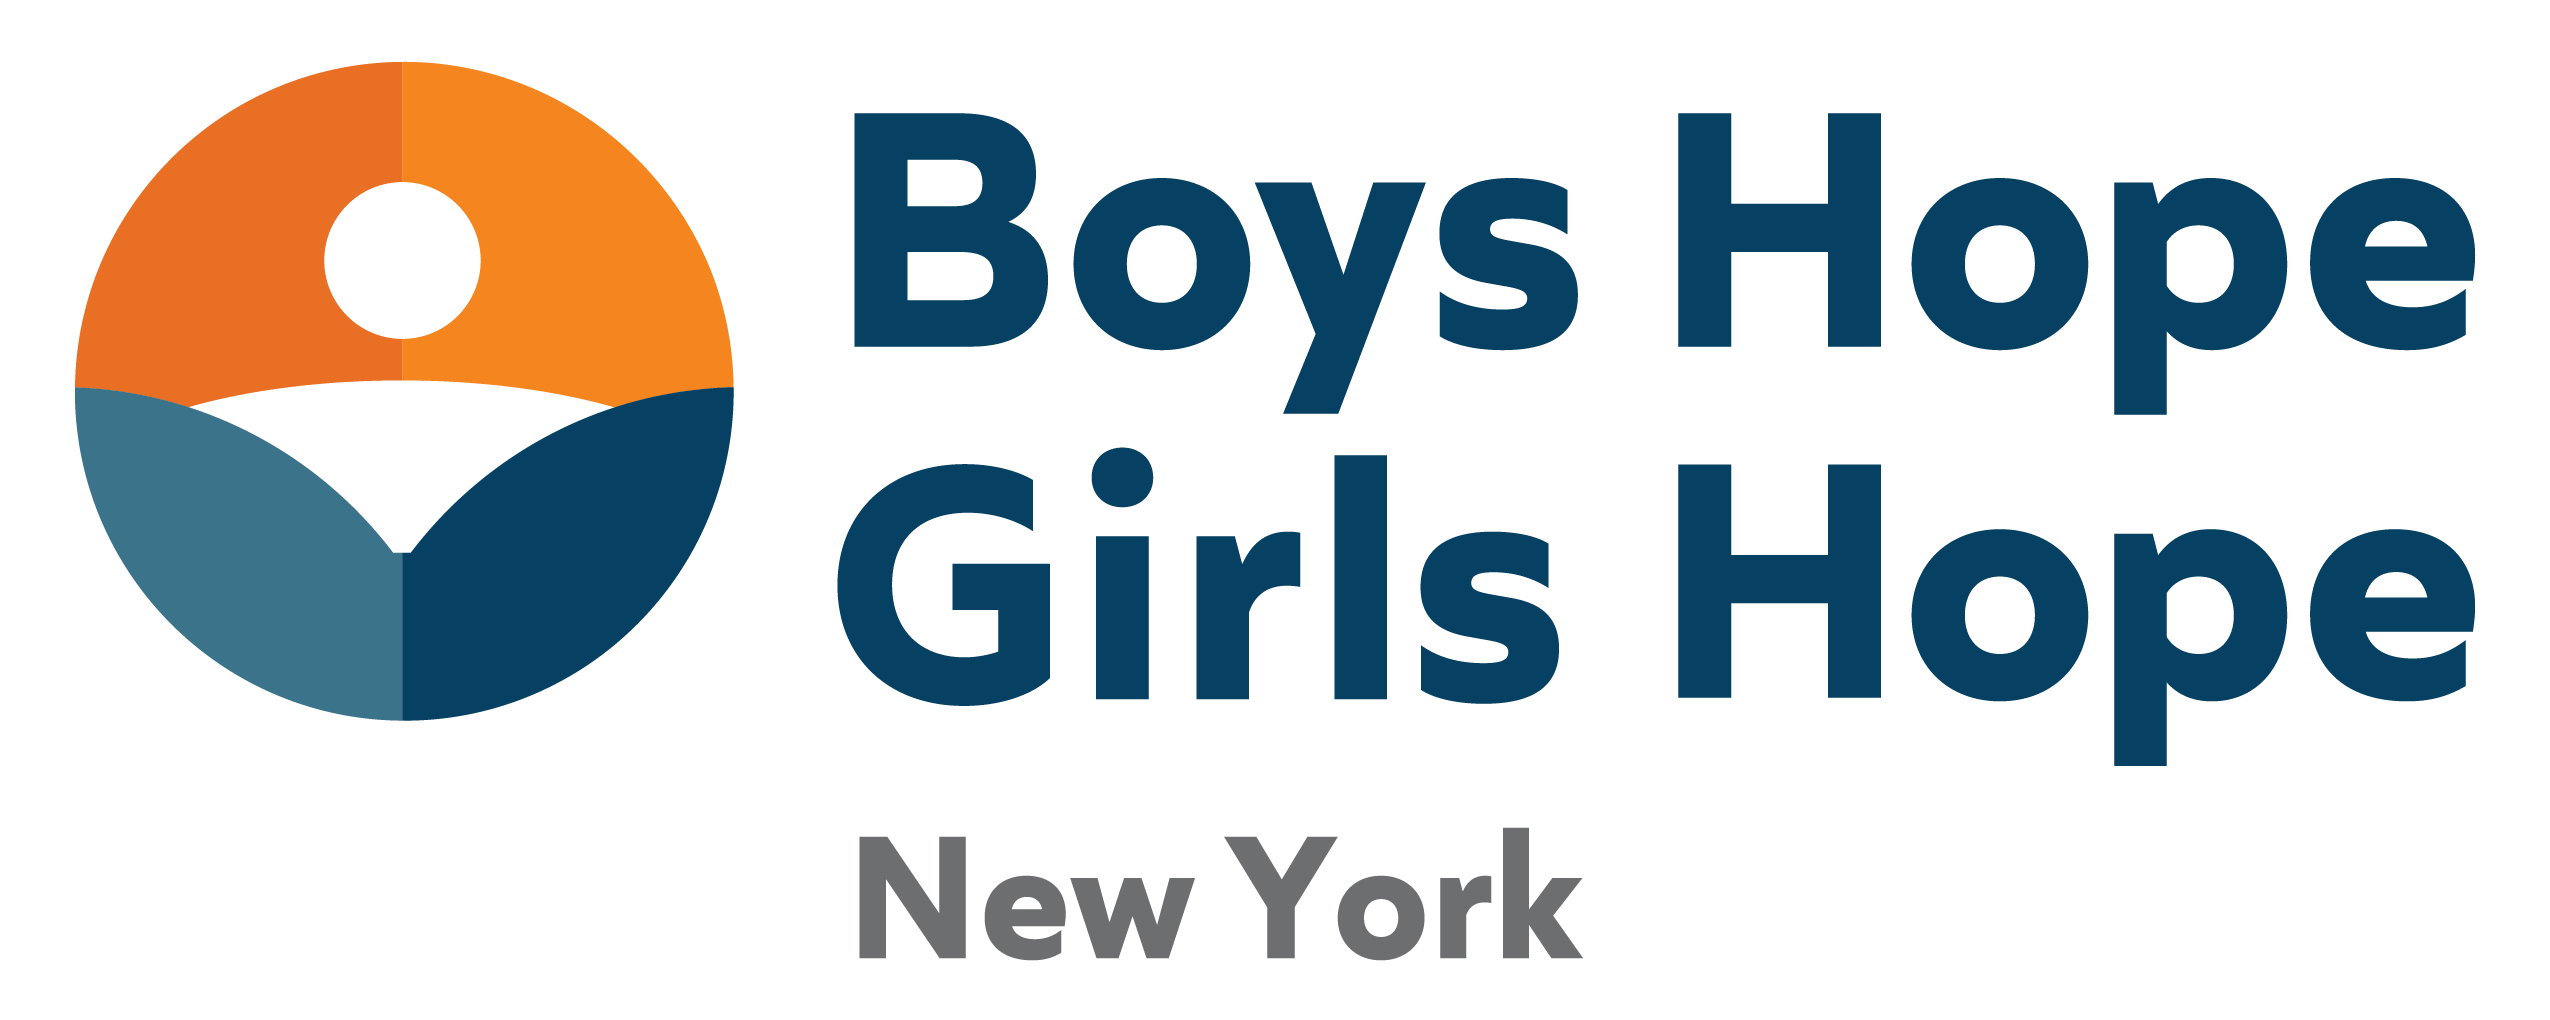 Boys Hope Girls Hope of New York